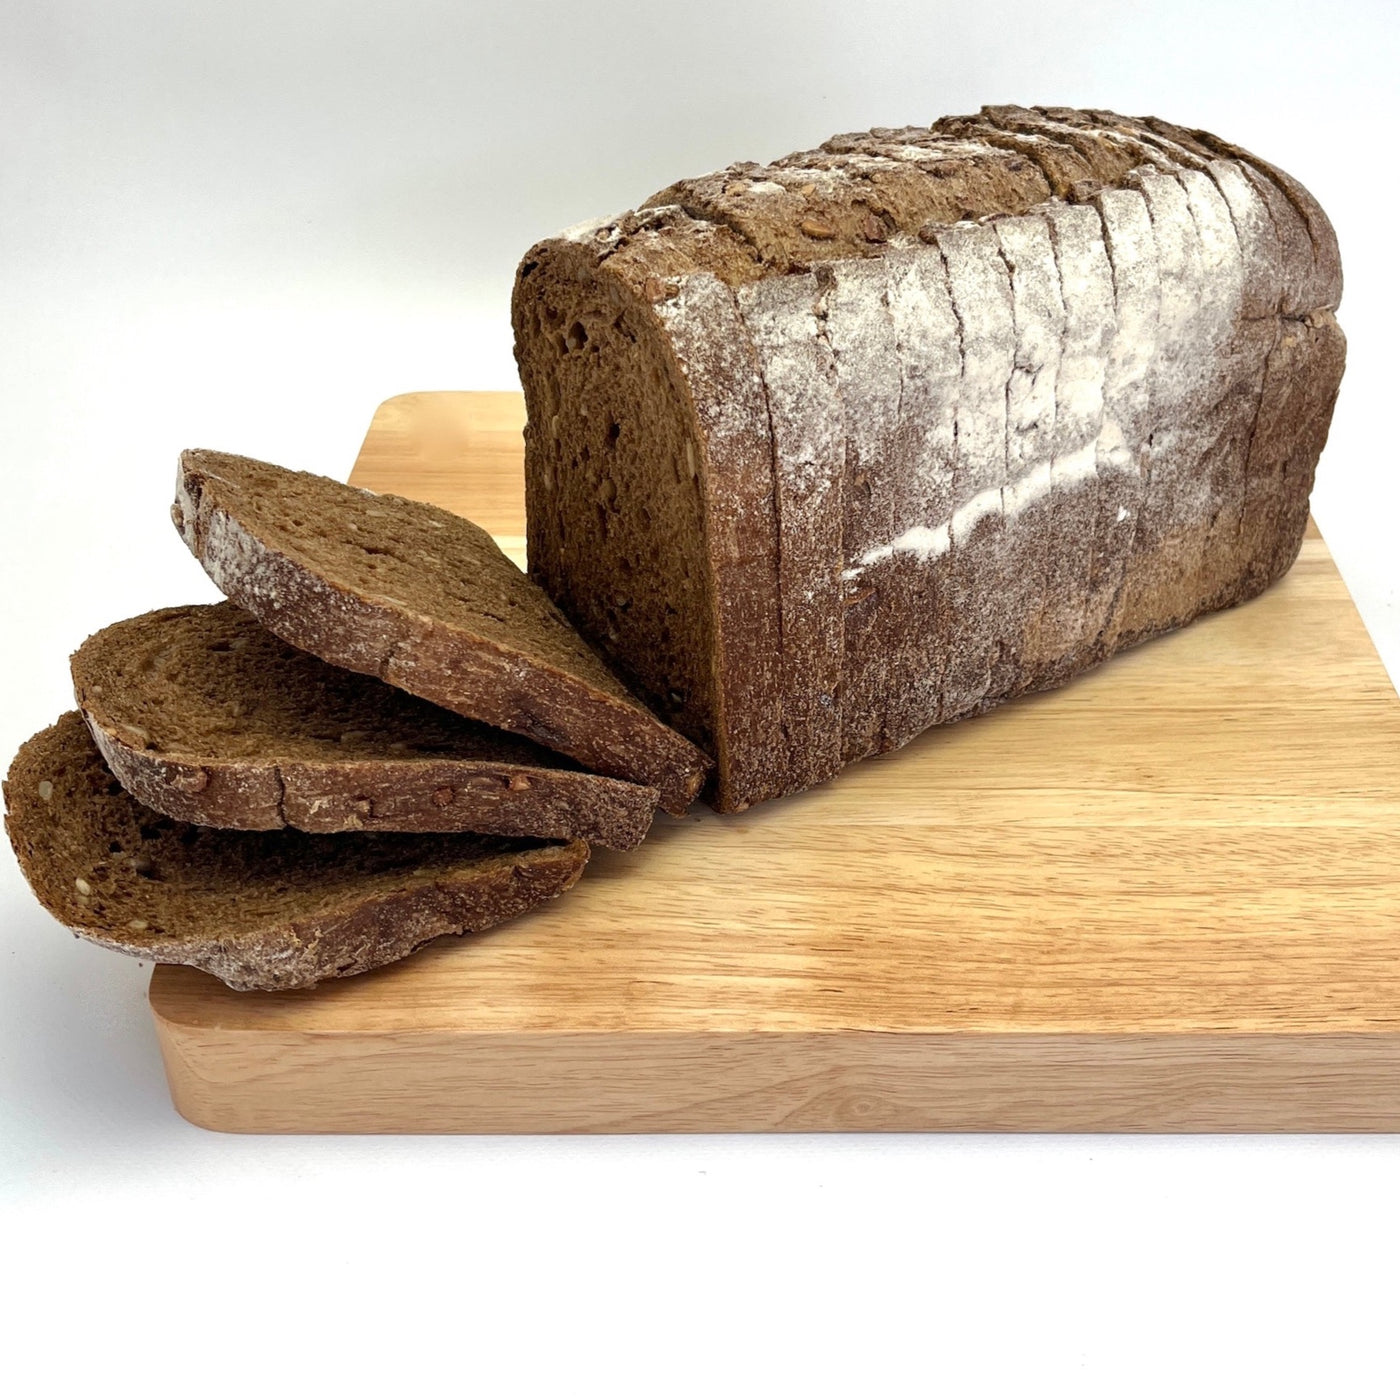 Rye sandwich loaf 900g